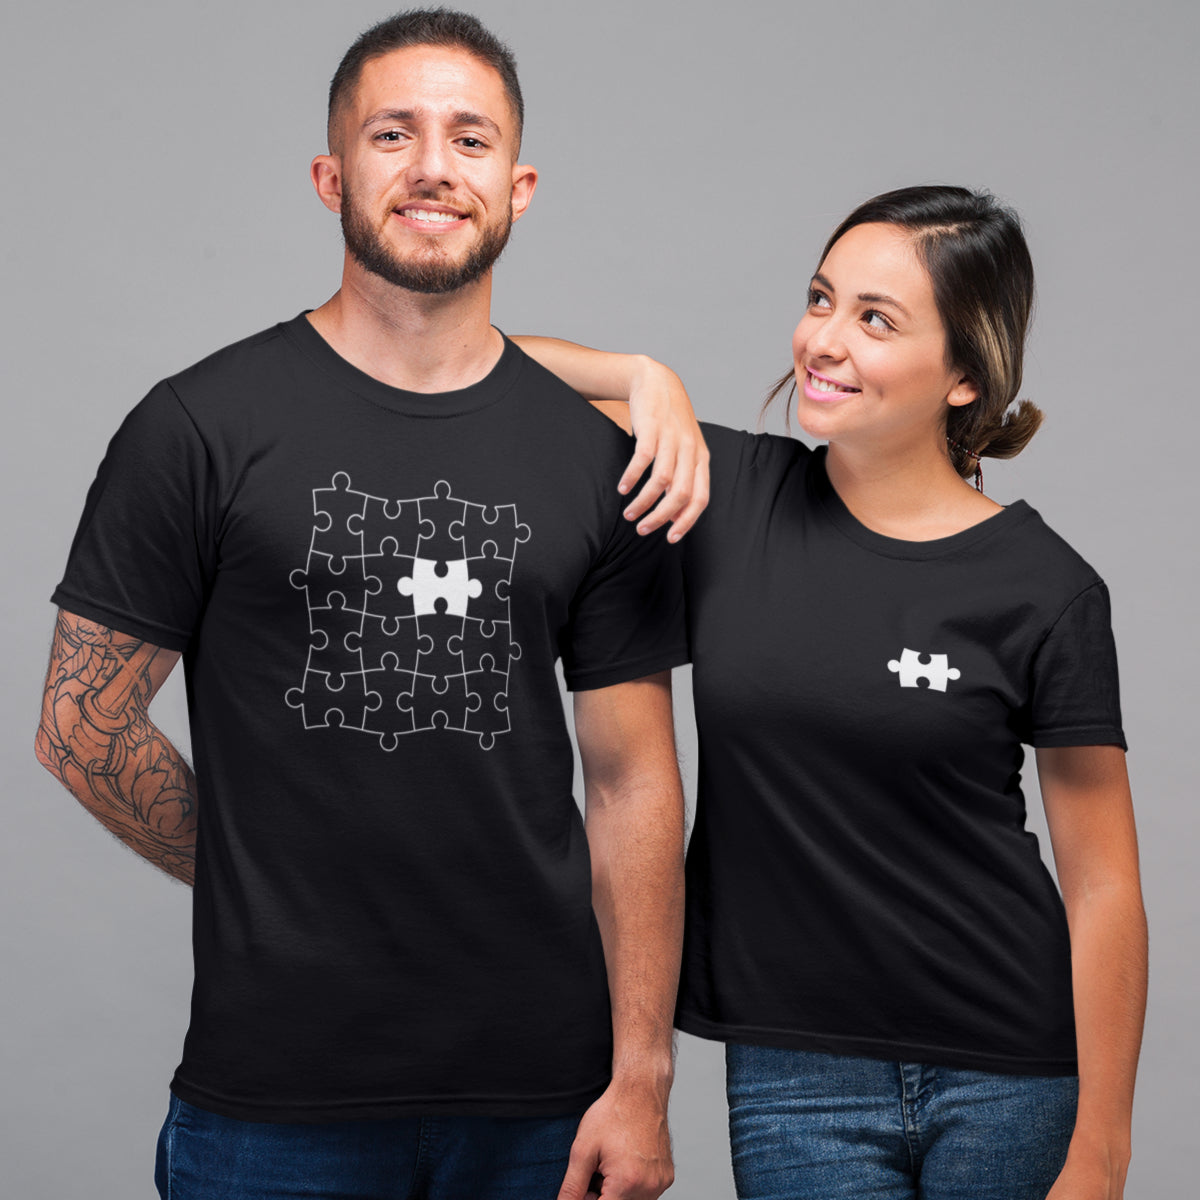 Juodi unisex marškinėliai poroms "Puzlė“ Moteriškas dizainas